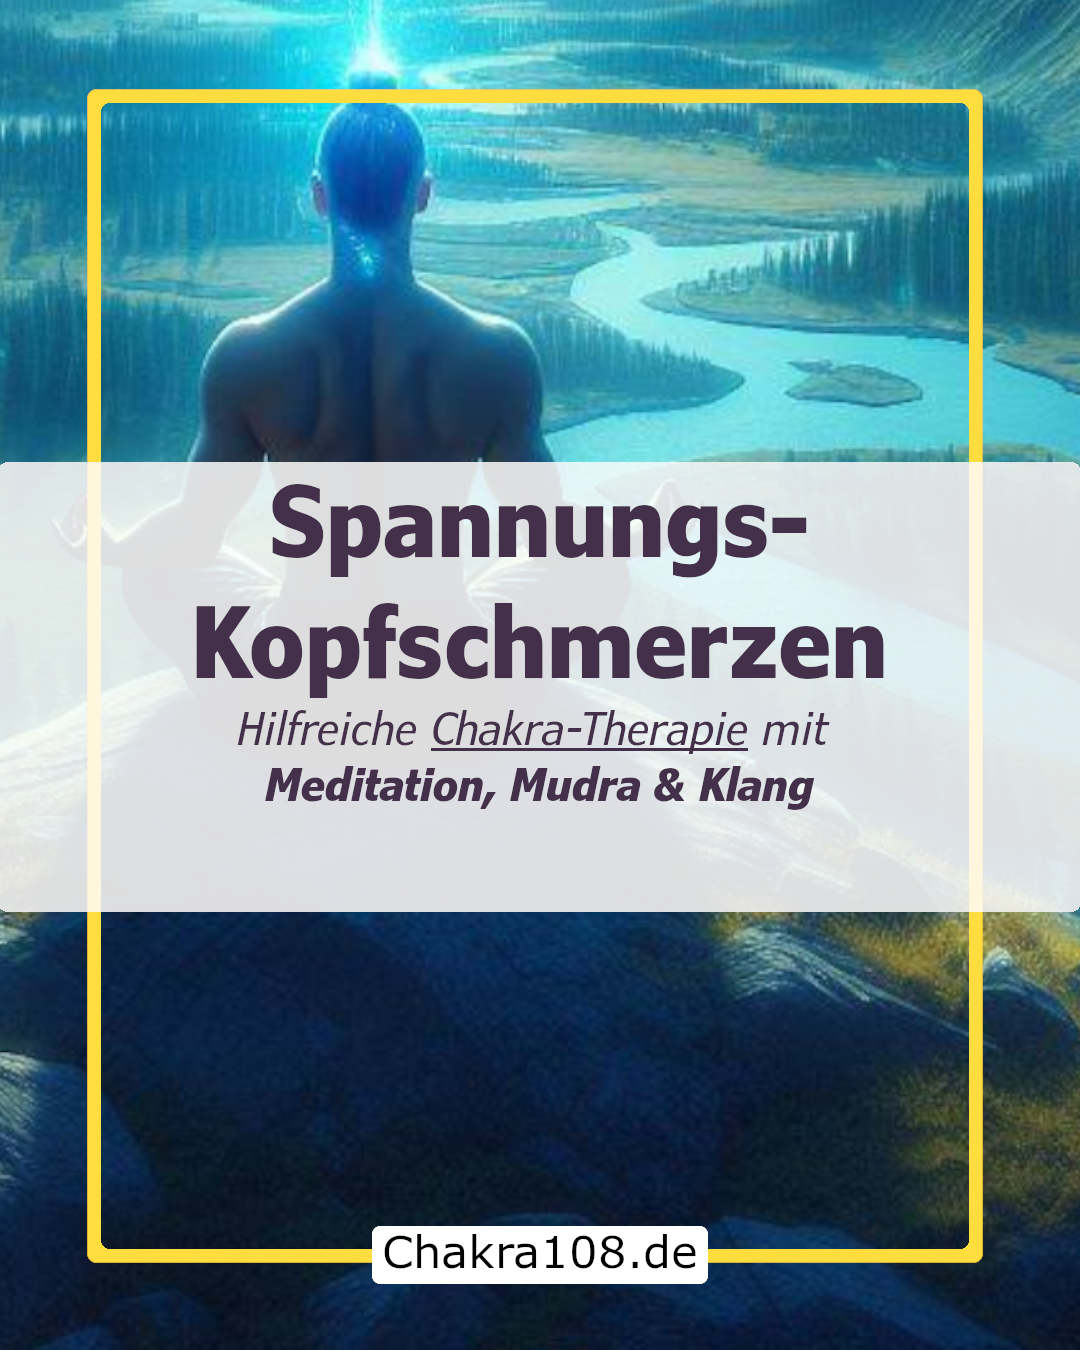 Spannungs-Kopfschmerzen loswerden mit Chakra Meditation, Mudra & Klang ( ruhig )